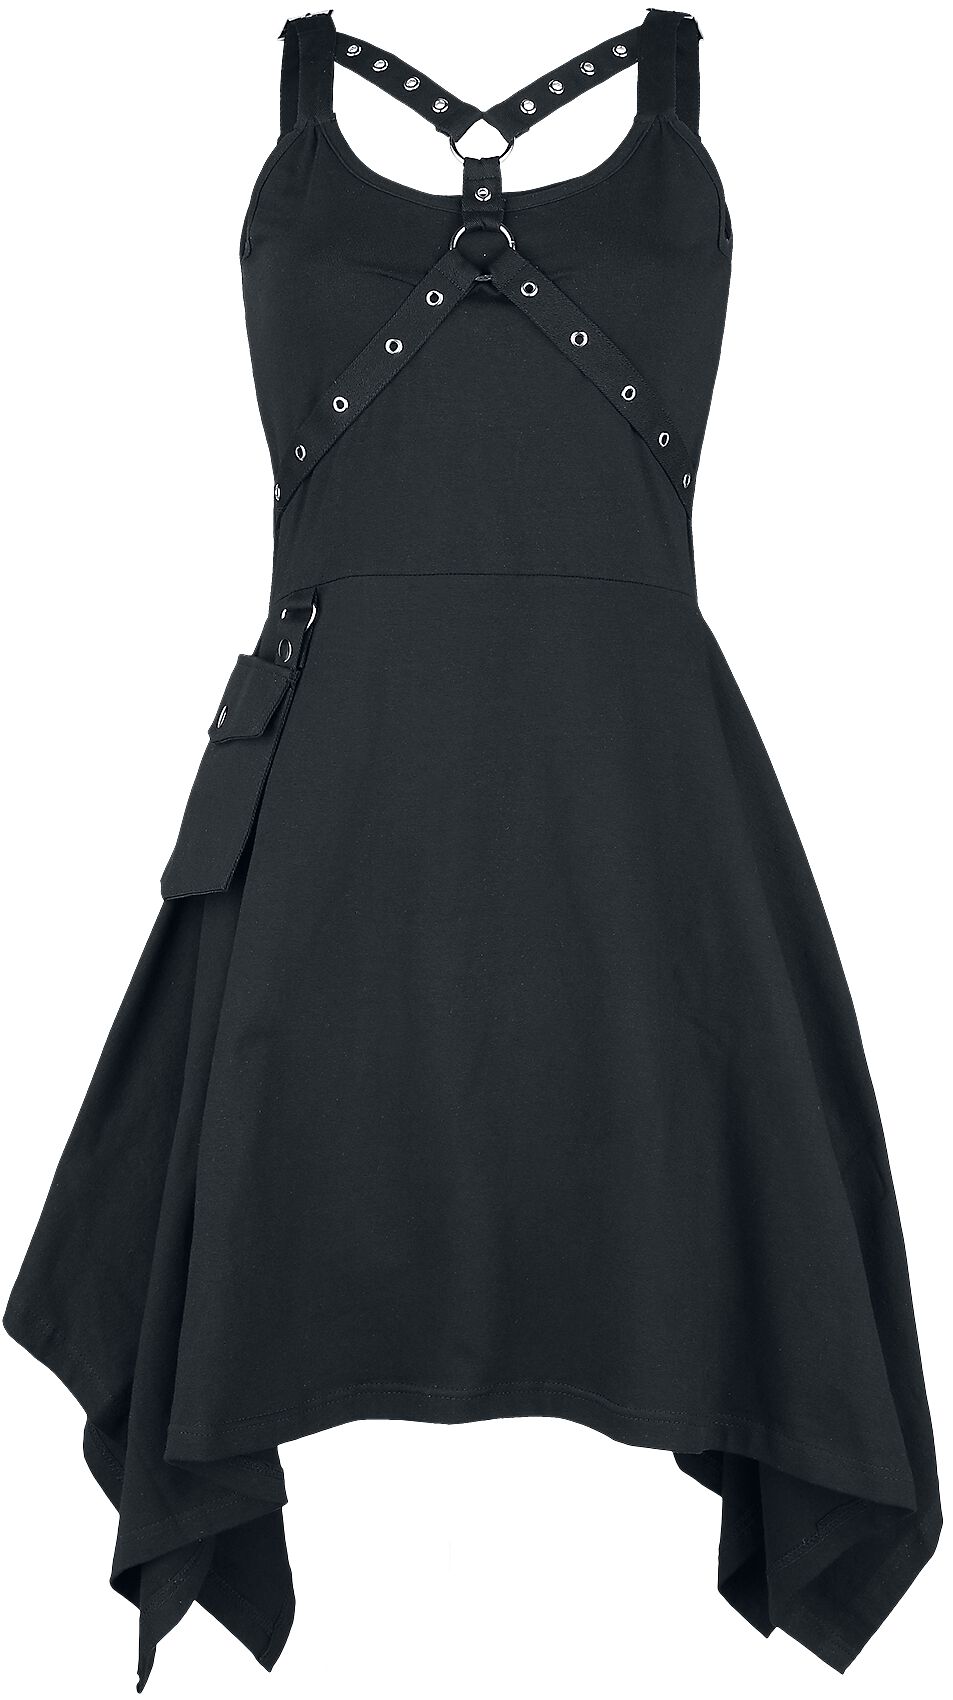 Heartless - Gothic Kleid knielang - Unpleasant Dreams Dress - XS bis XXL - für Damen - Größe S - schwarz